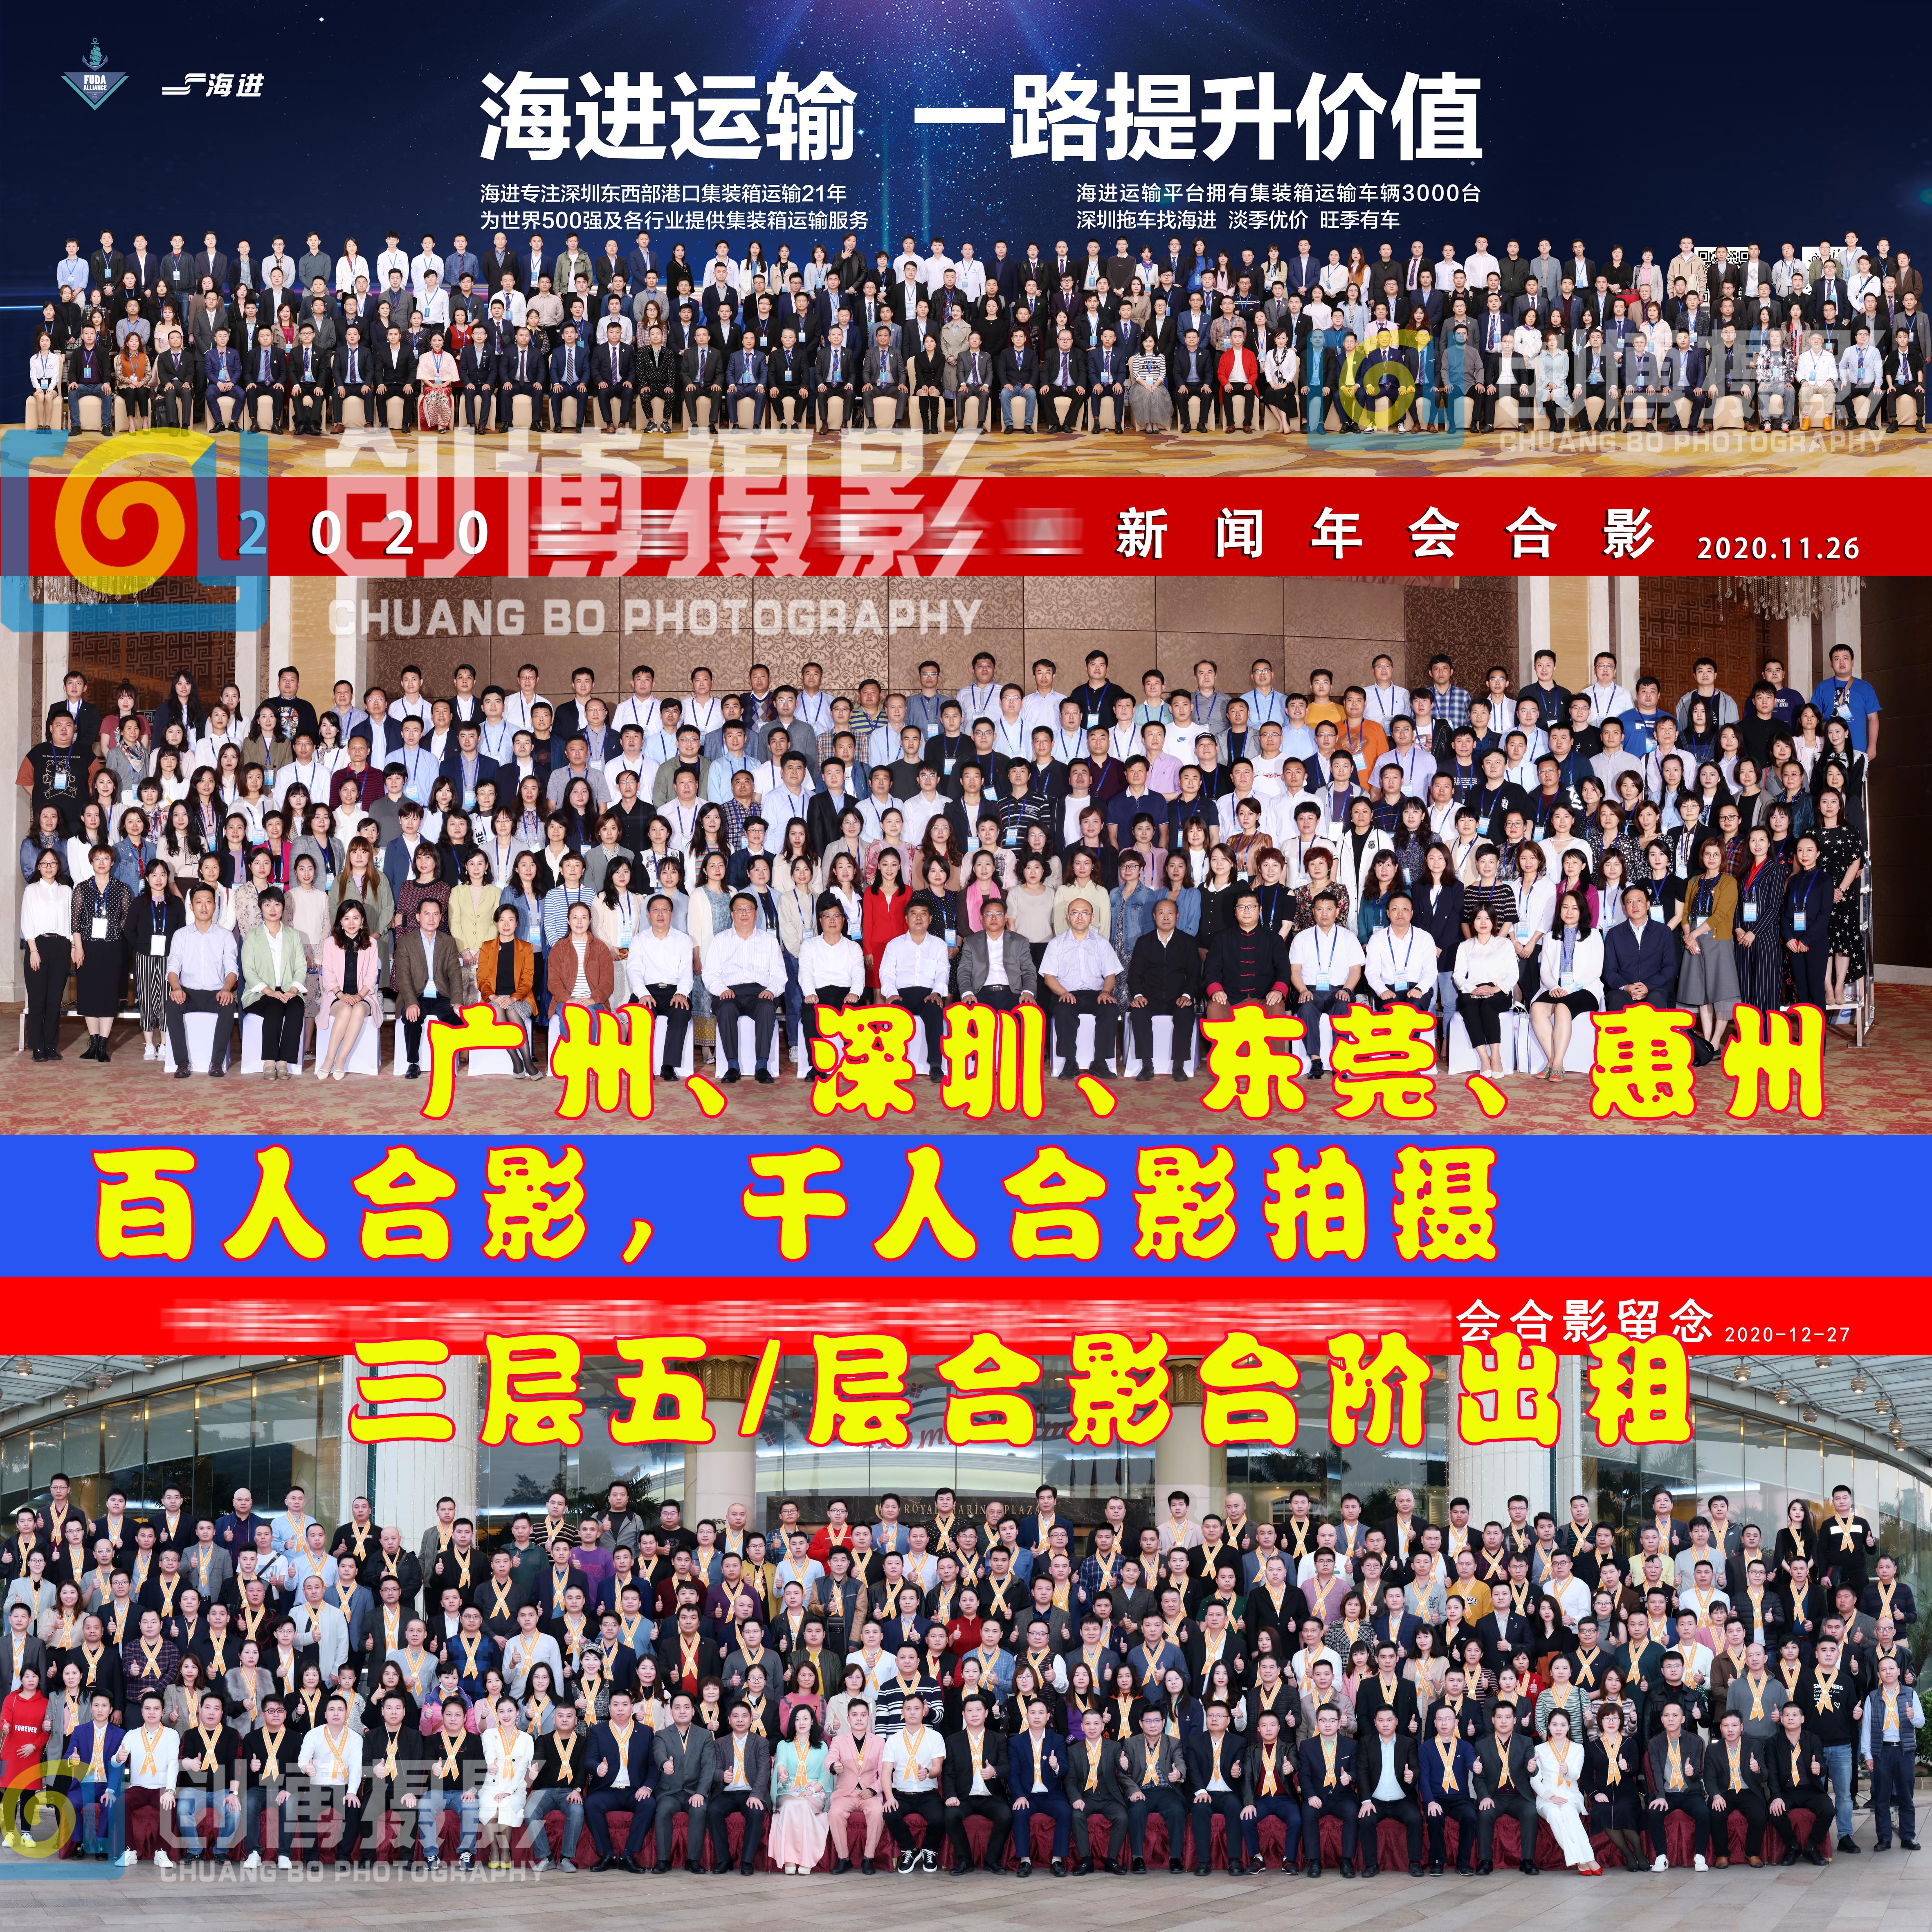 广州企业集体照 百人年会合影 百人会议合影 千人集体照拍摄